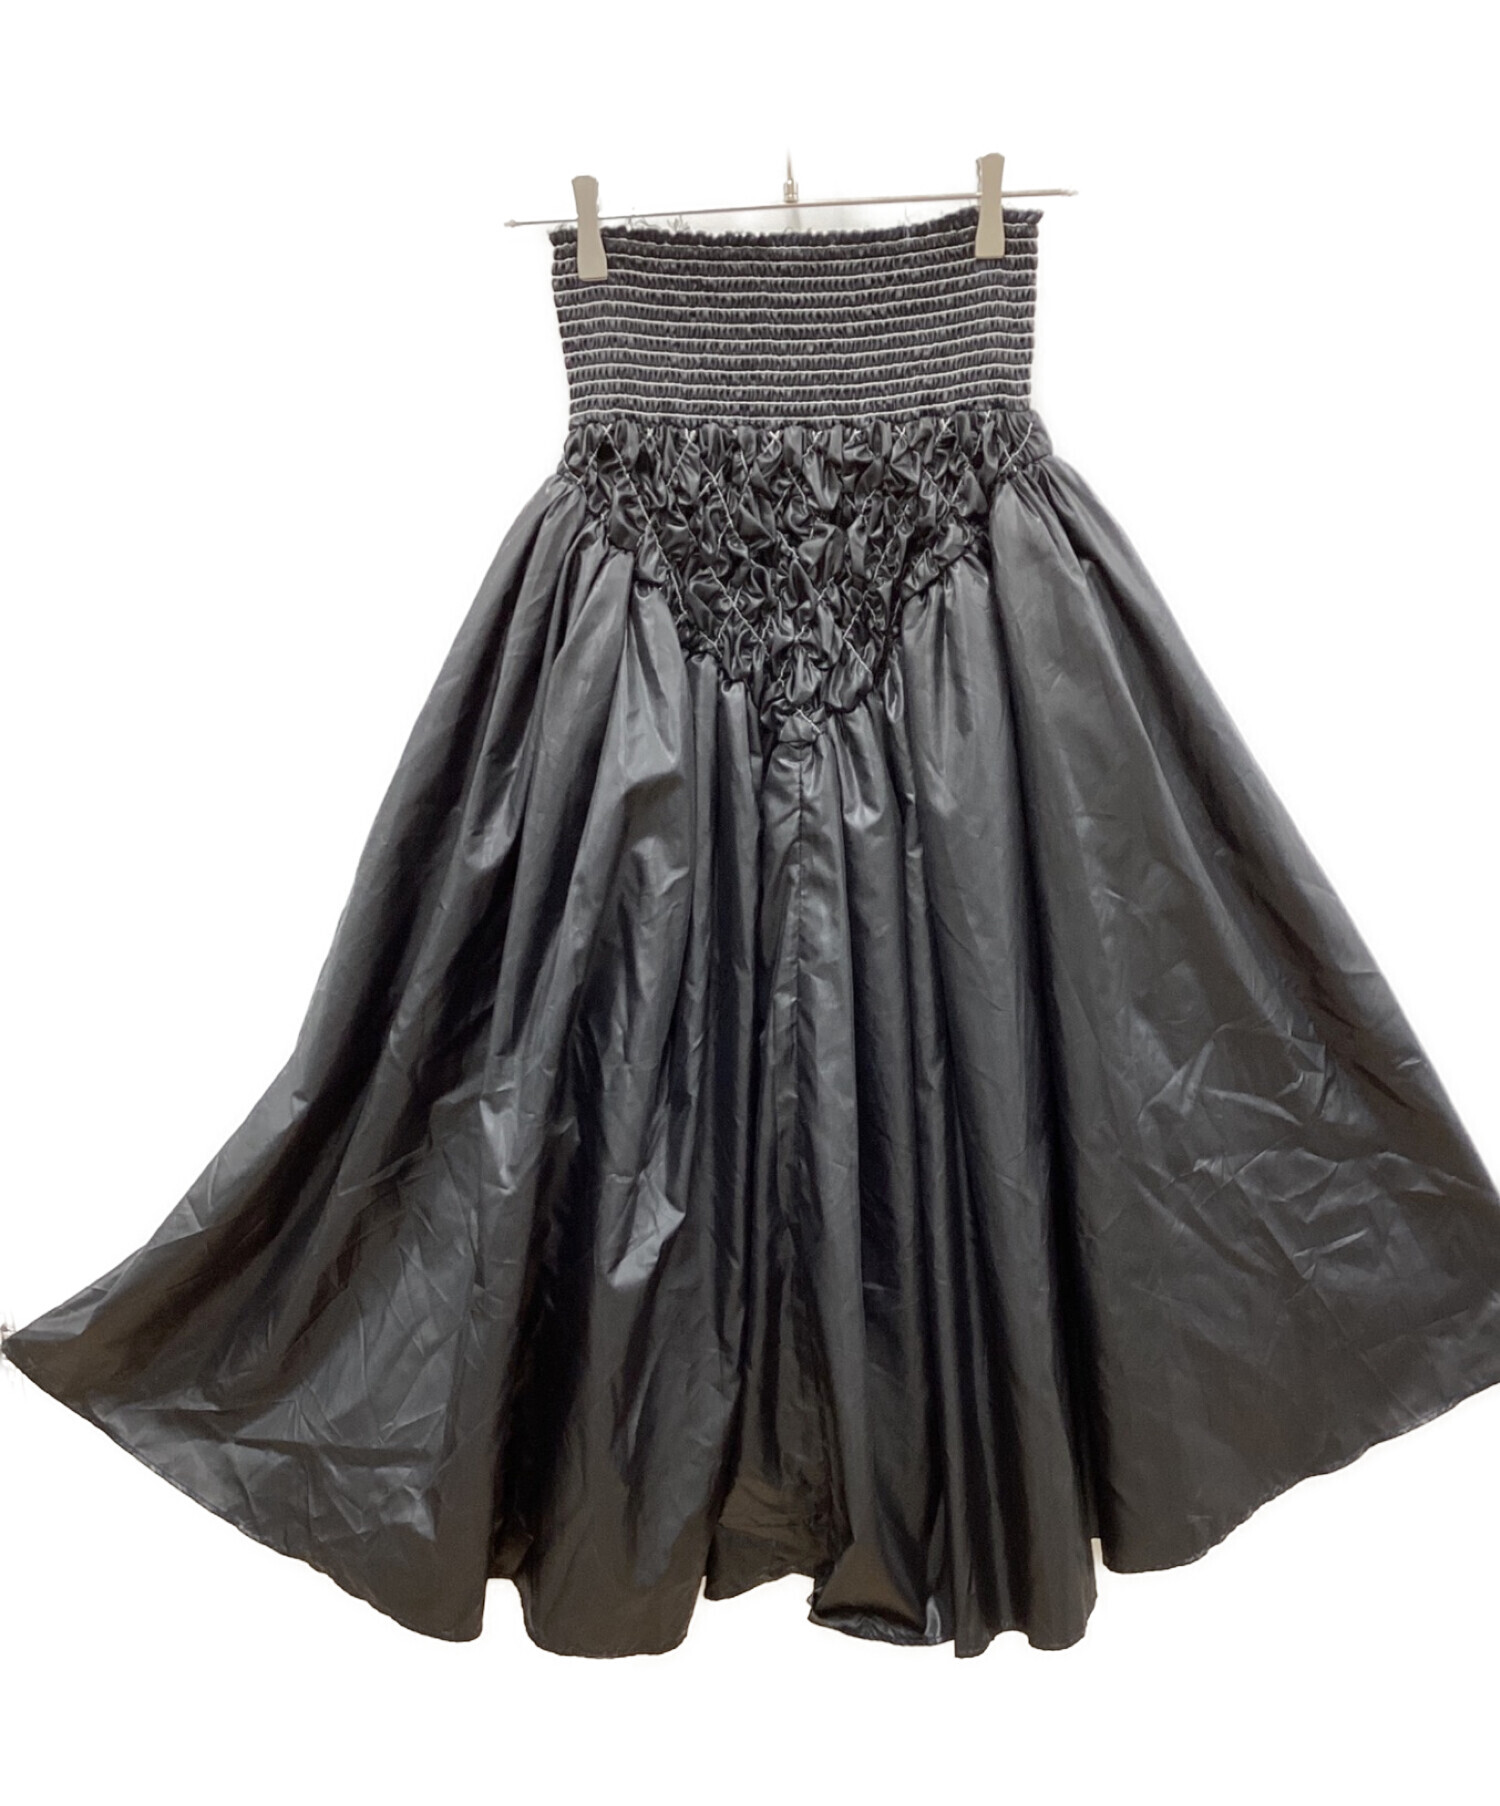 MAISON SPECIAL (メゾンスペシャル) ハンドシャーリングボリュームタフタスカート ブラック サイズ:FREE